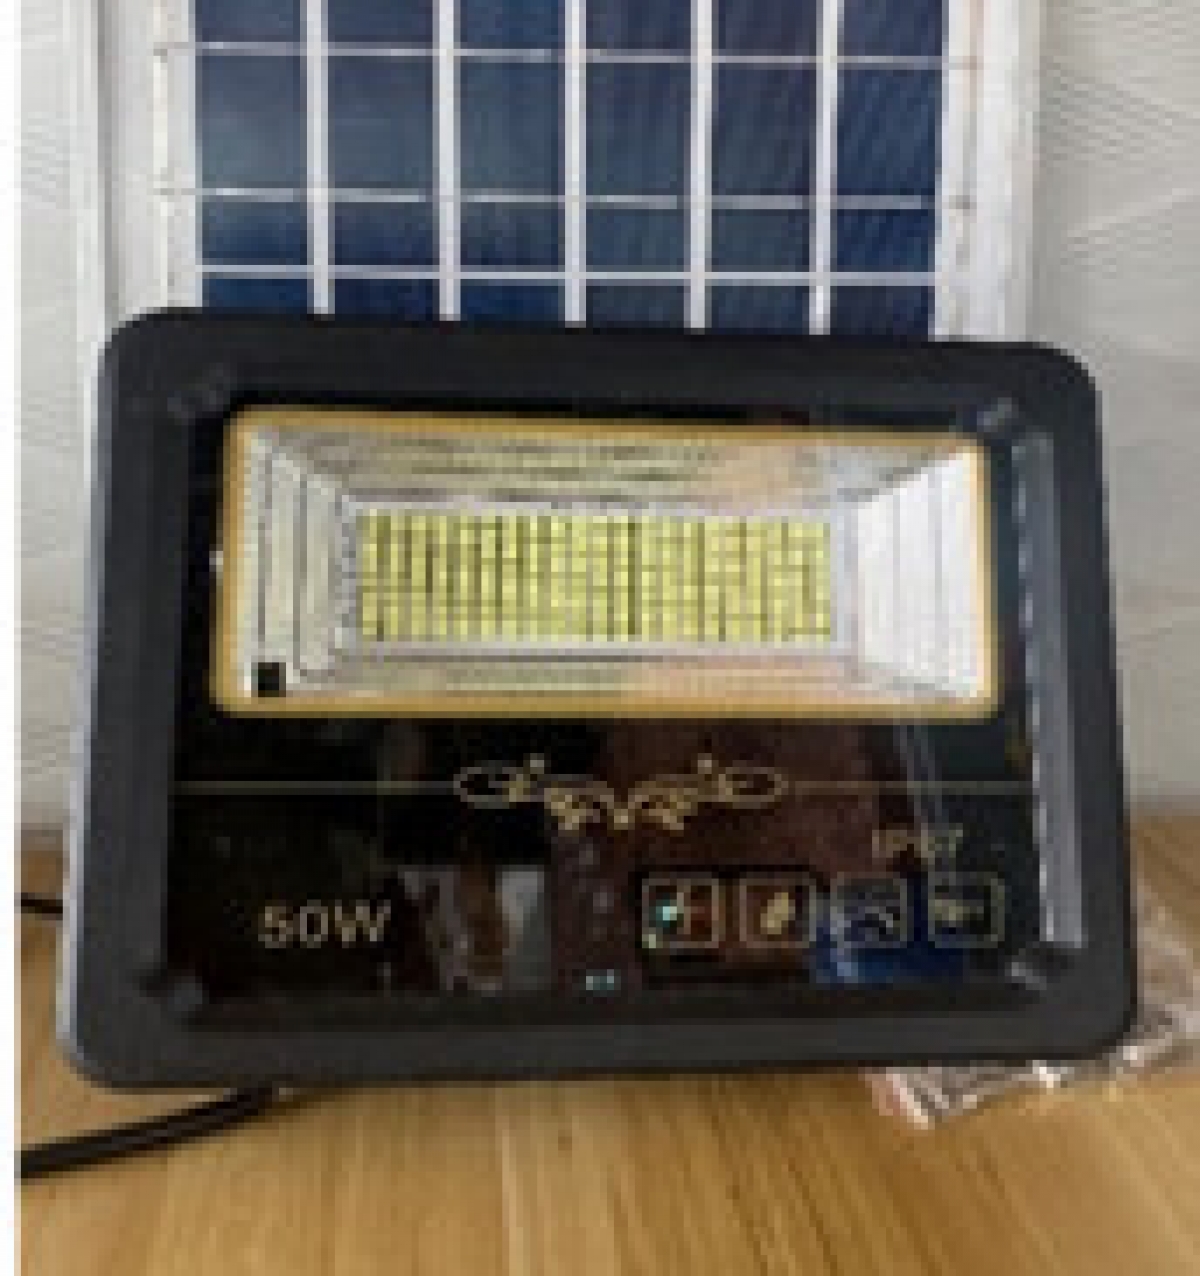 Đèn pha năng lượng mặt trời DSY-8050A  (50W)